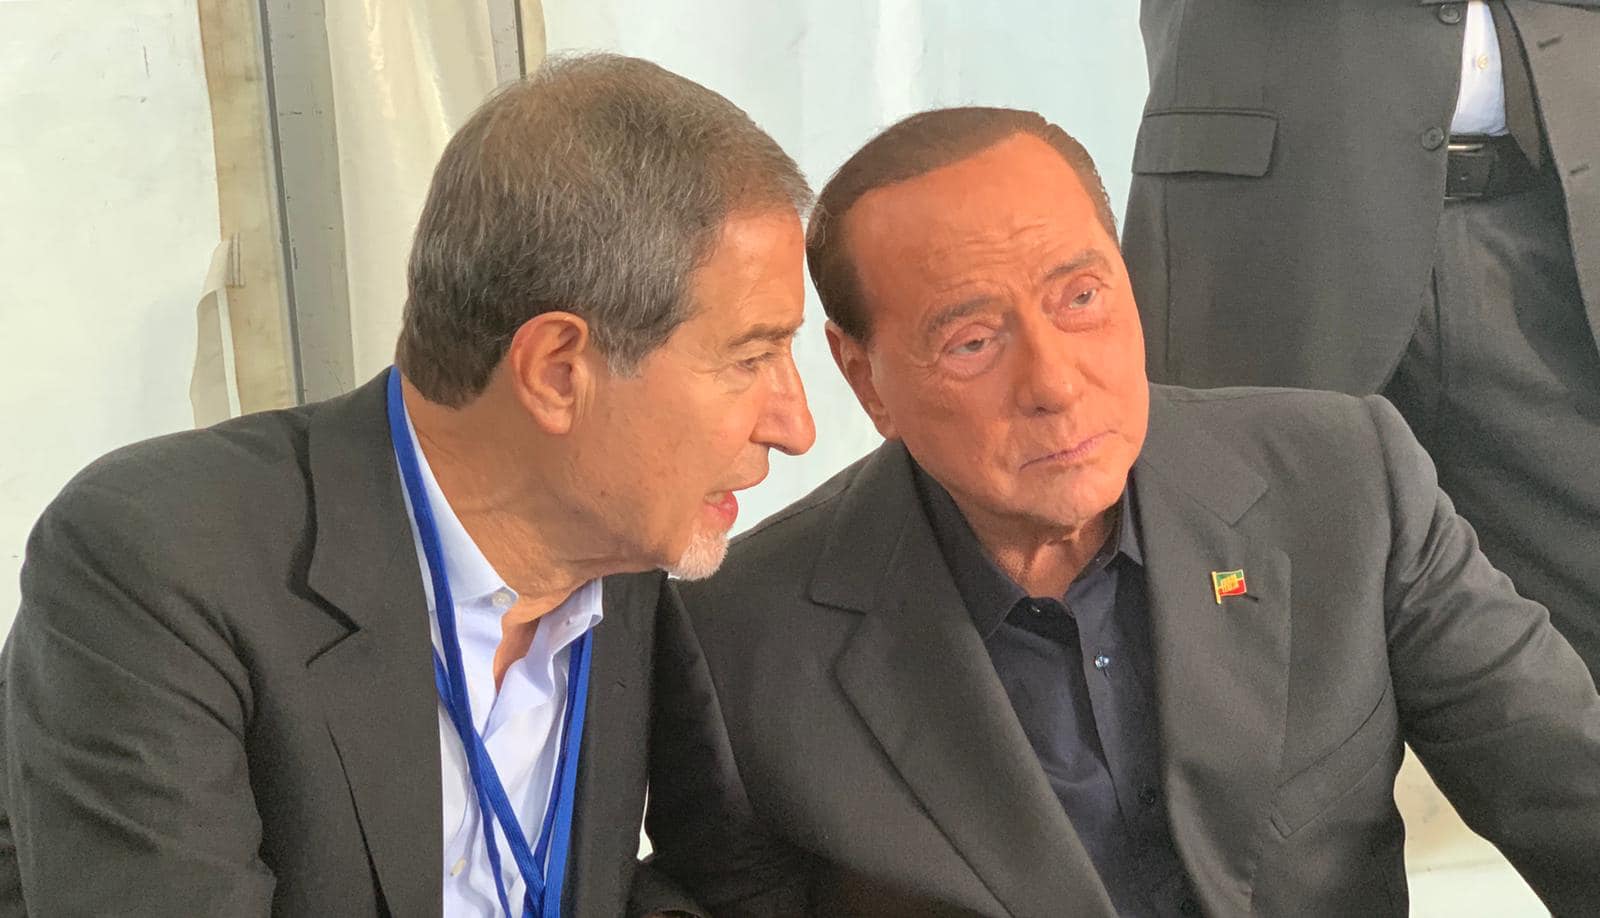 Quirinale, Berlusconi candidato presidente? Il Cavaliere fa i conti e Musumeci lo lancia: “Sarei felice per lui”